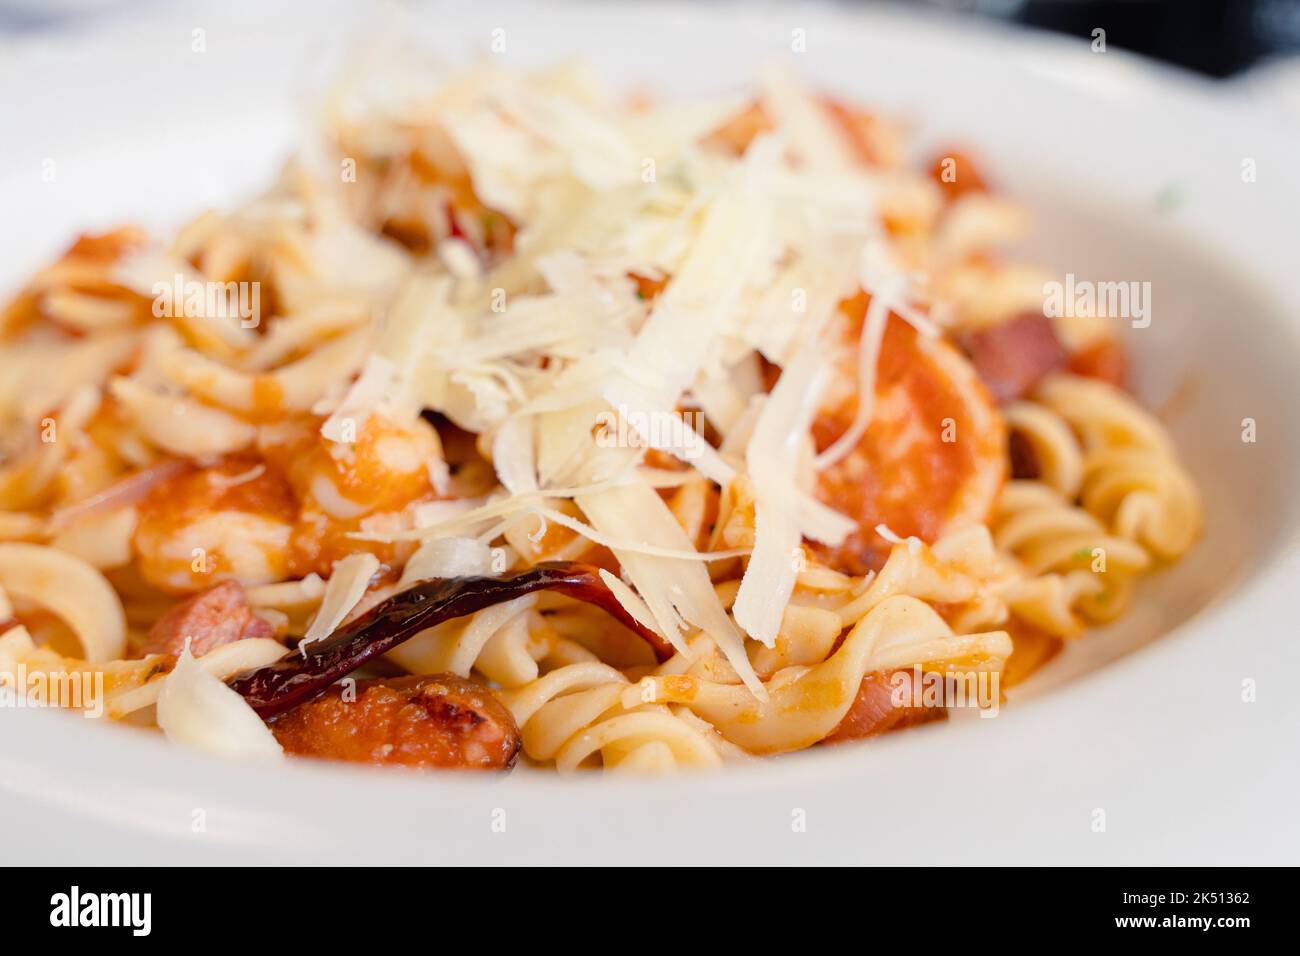 Nahaufnahme von Chilischote auf Pastaspiralen mit Meeresfrüchten, Fleisch und geriebenem Käse auf Tomatensauce. Traditionelle italienische Speiseteller im mexikanischen Stil Stockfoto